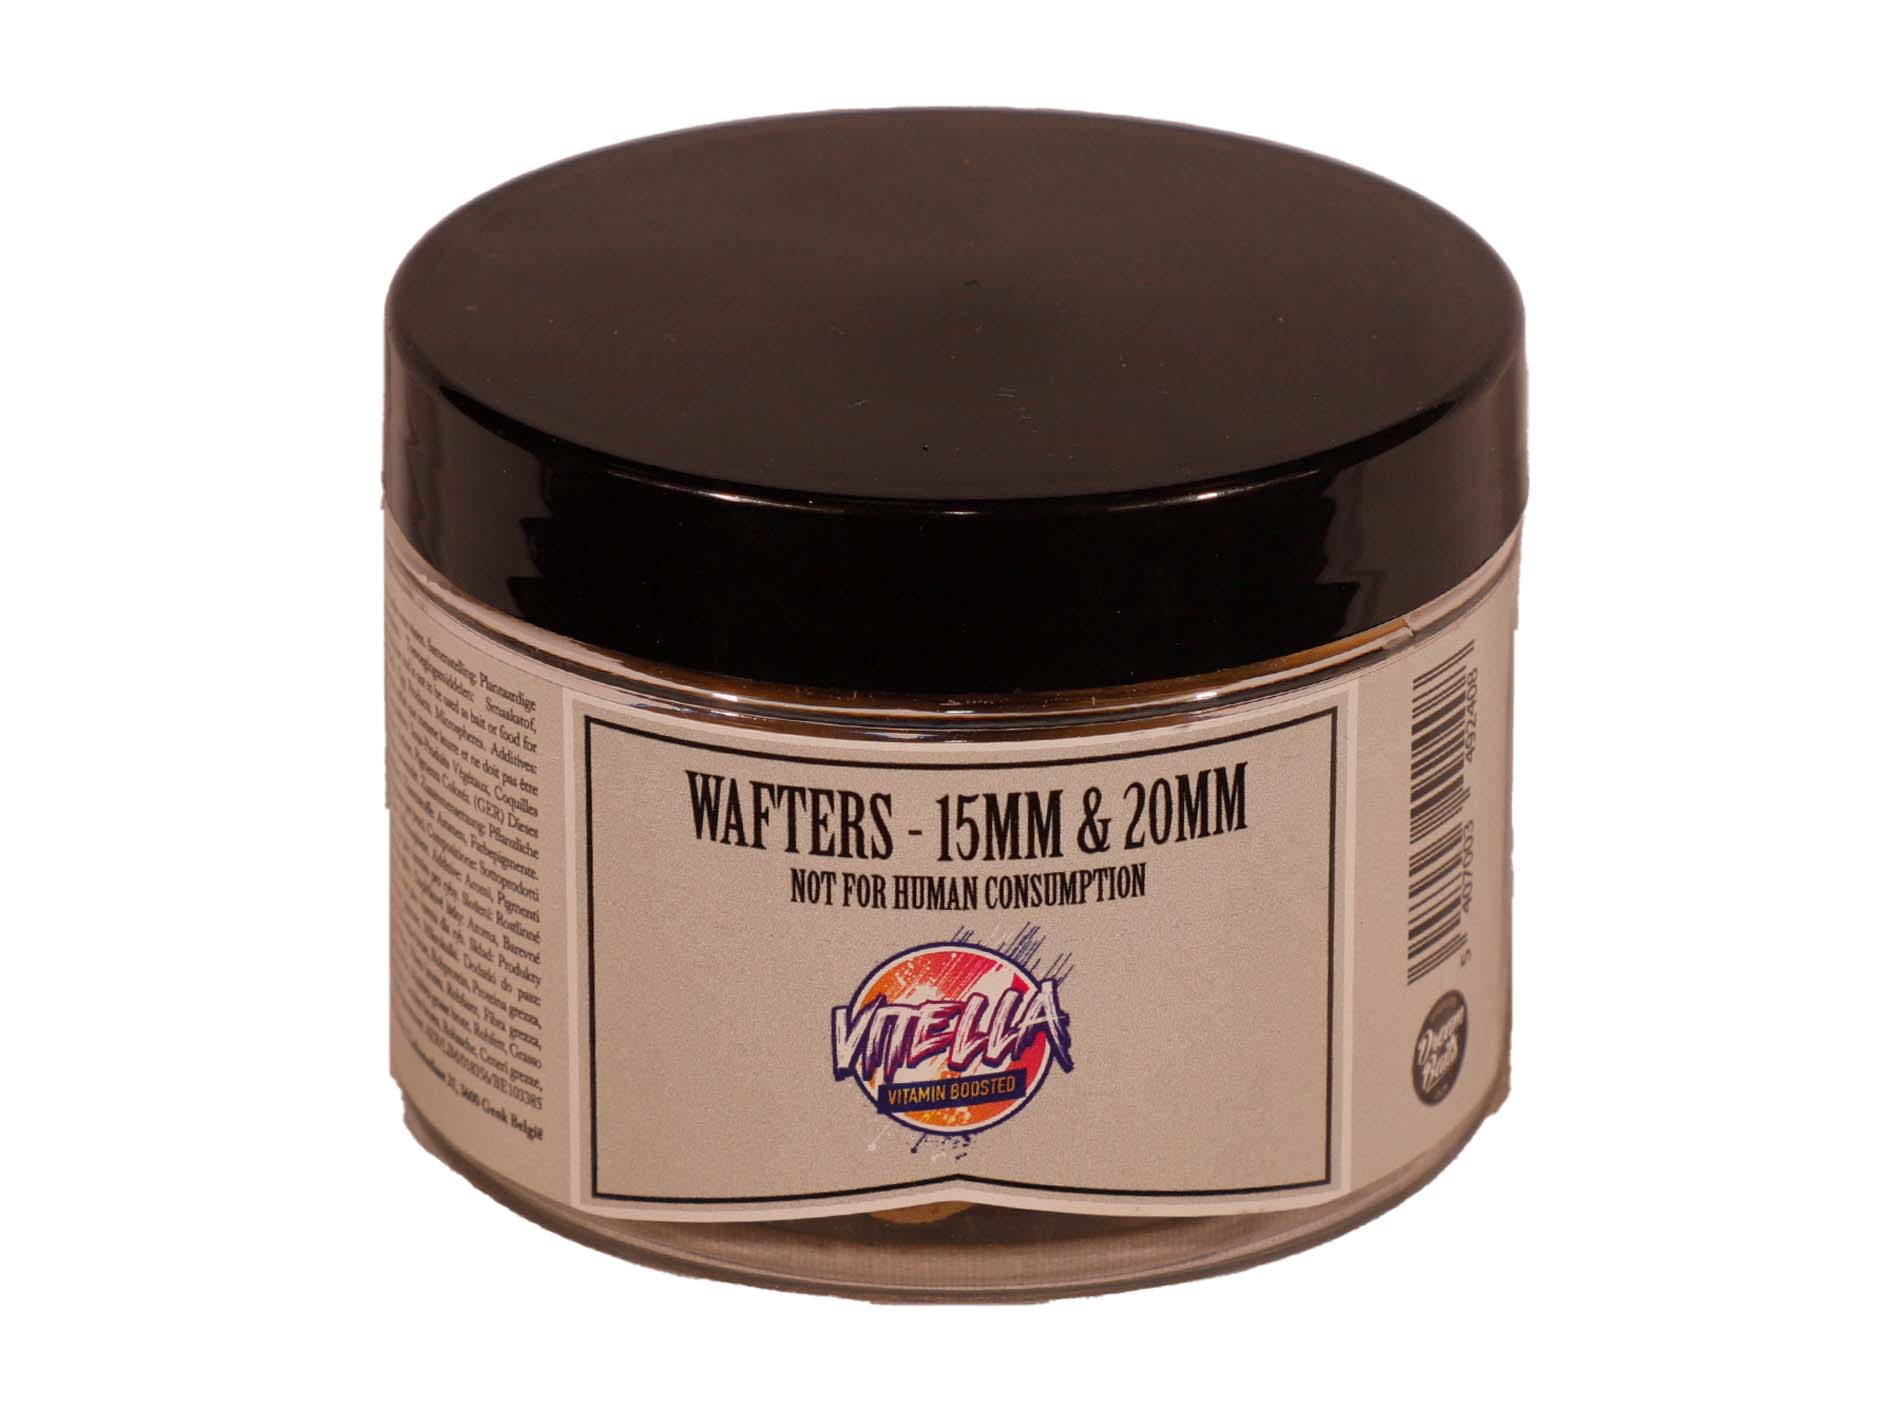 Dreambaits 15mm & 18mm Wafter Mix (50g) - Vitella